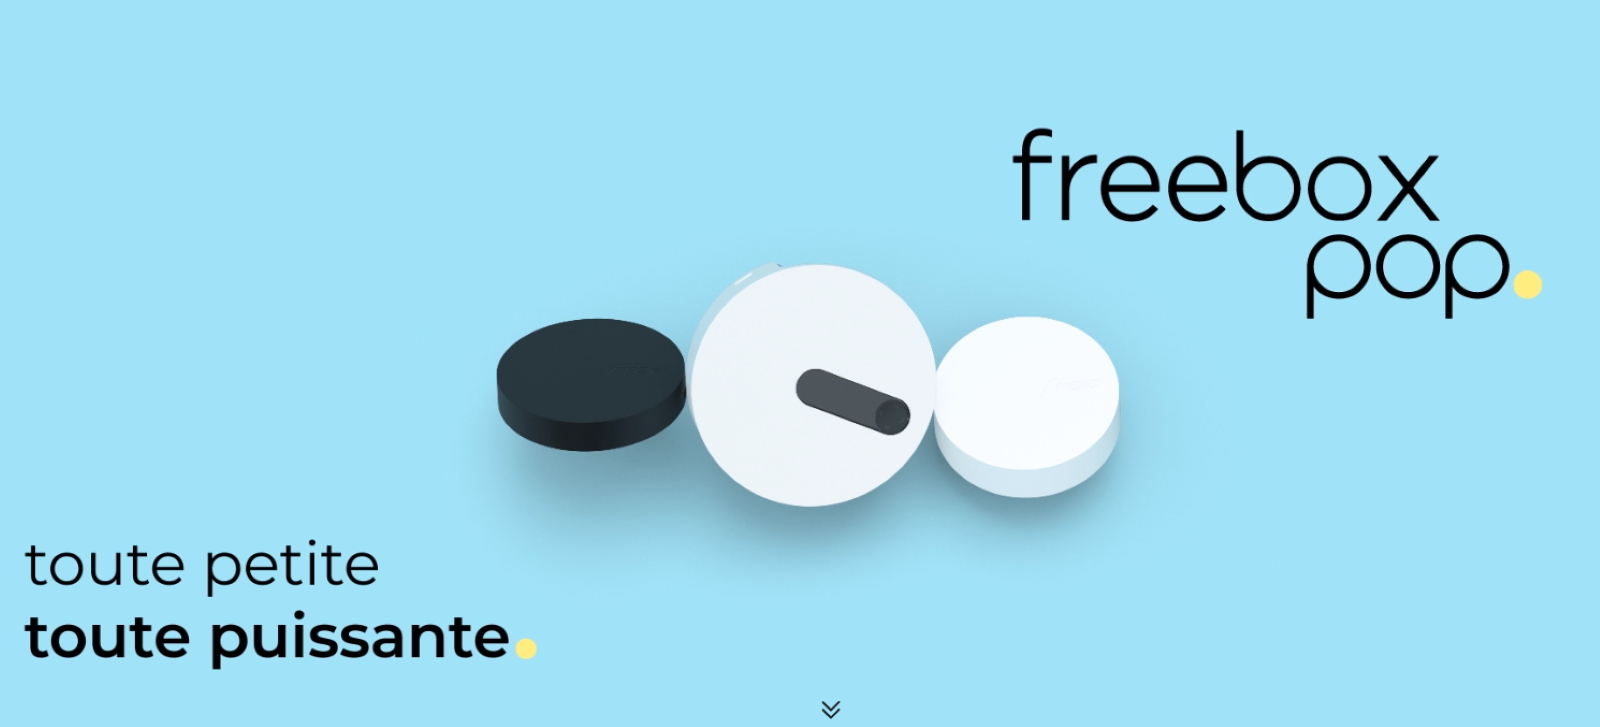 La Freebox Pop V8 est composée de deux modules, avec un serveur et un player. © Free